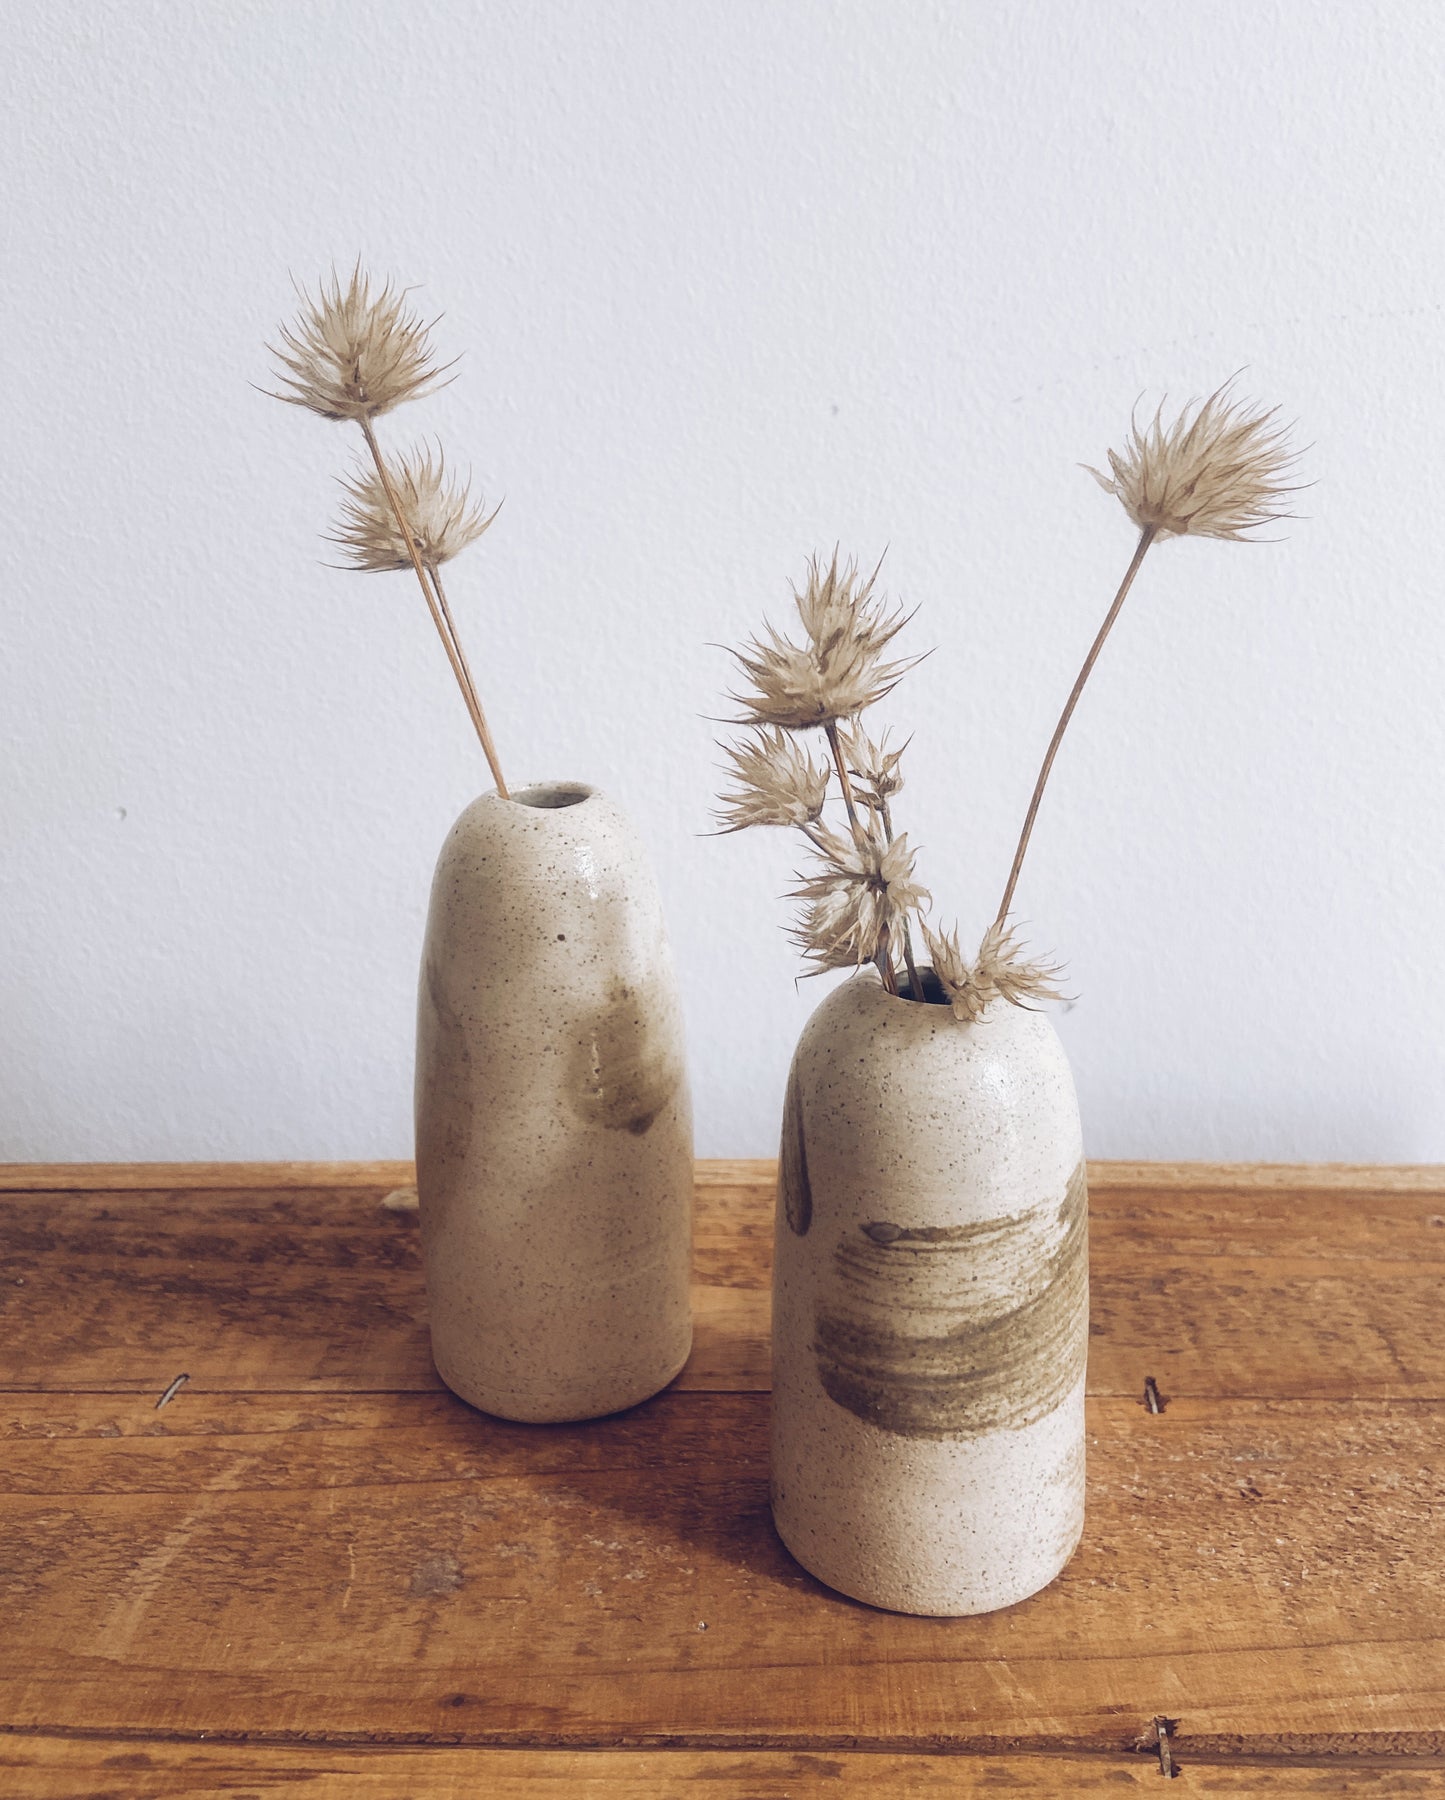 Vase with Javea’s pigment strokes